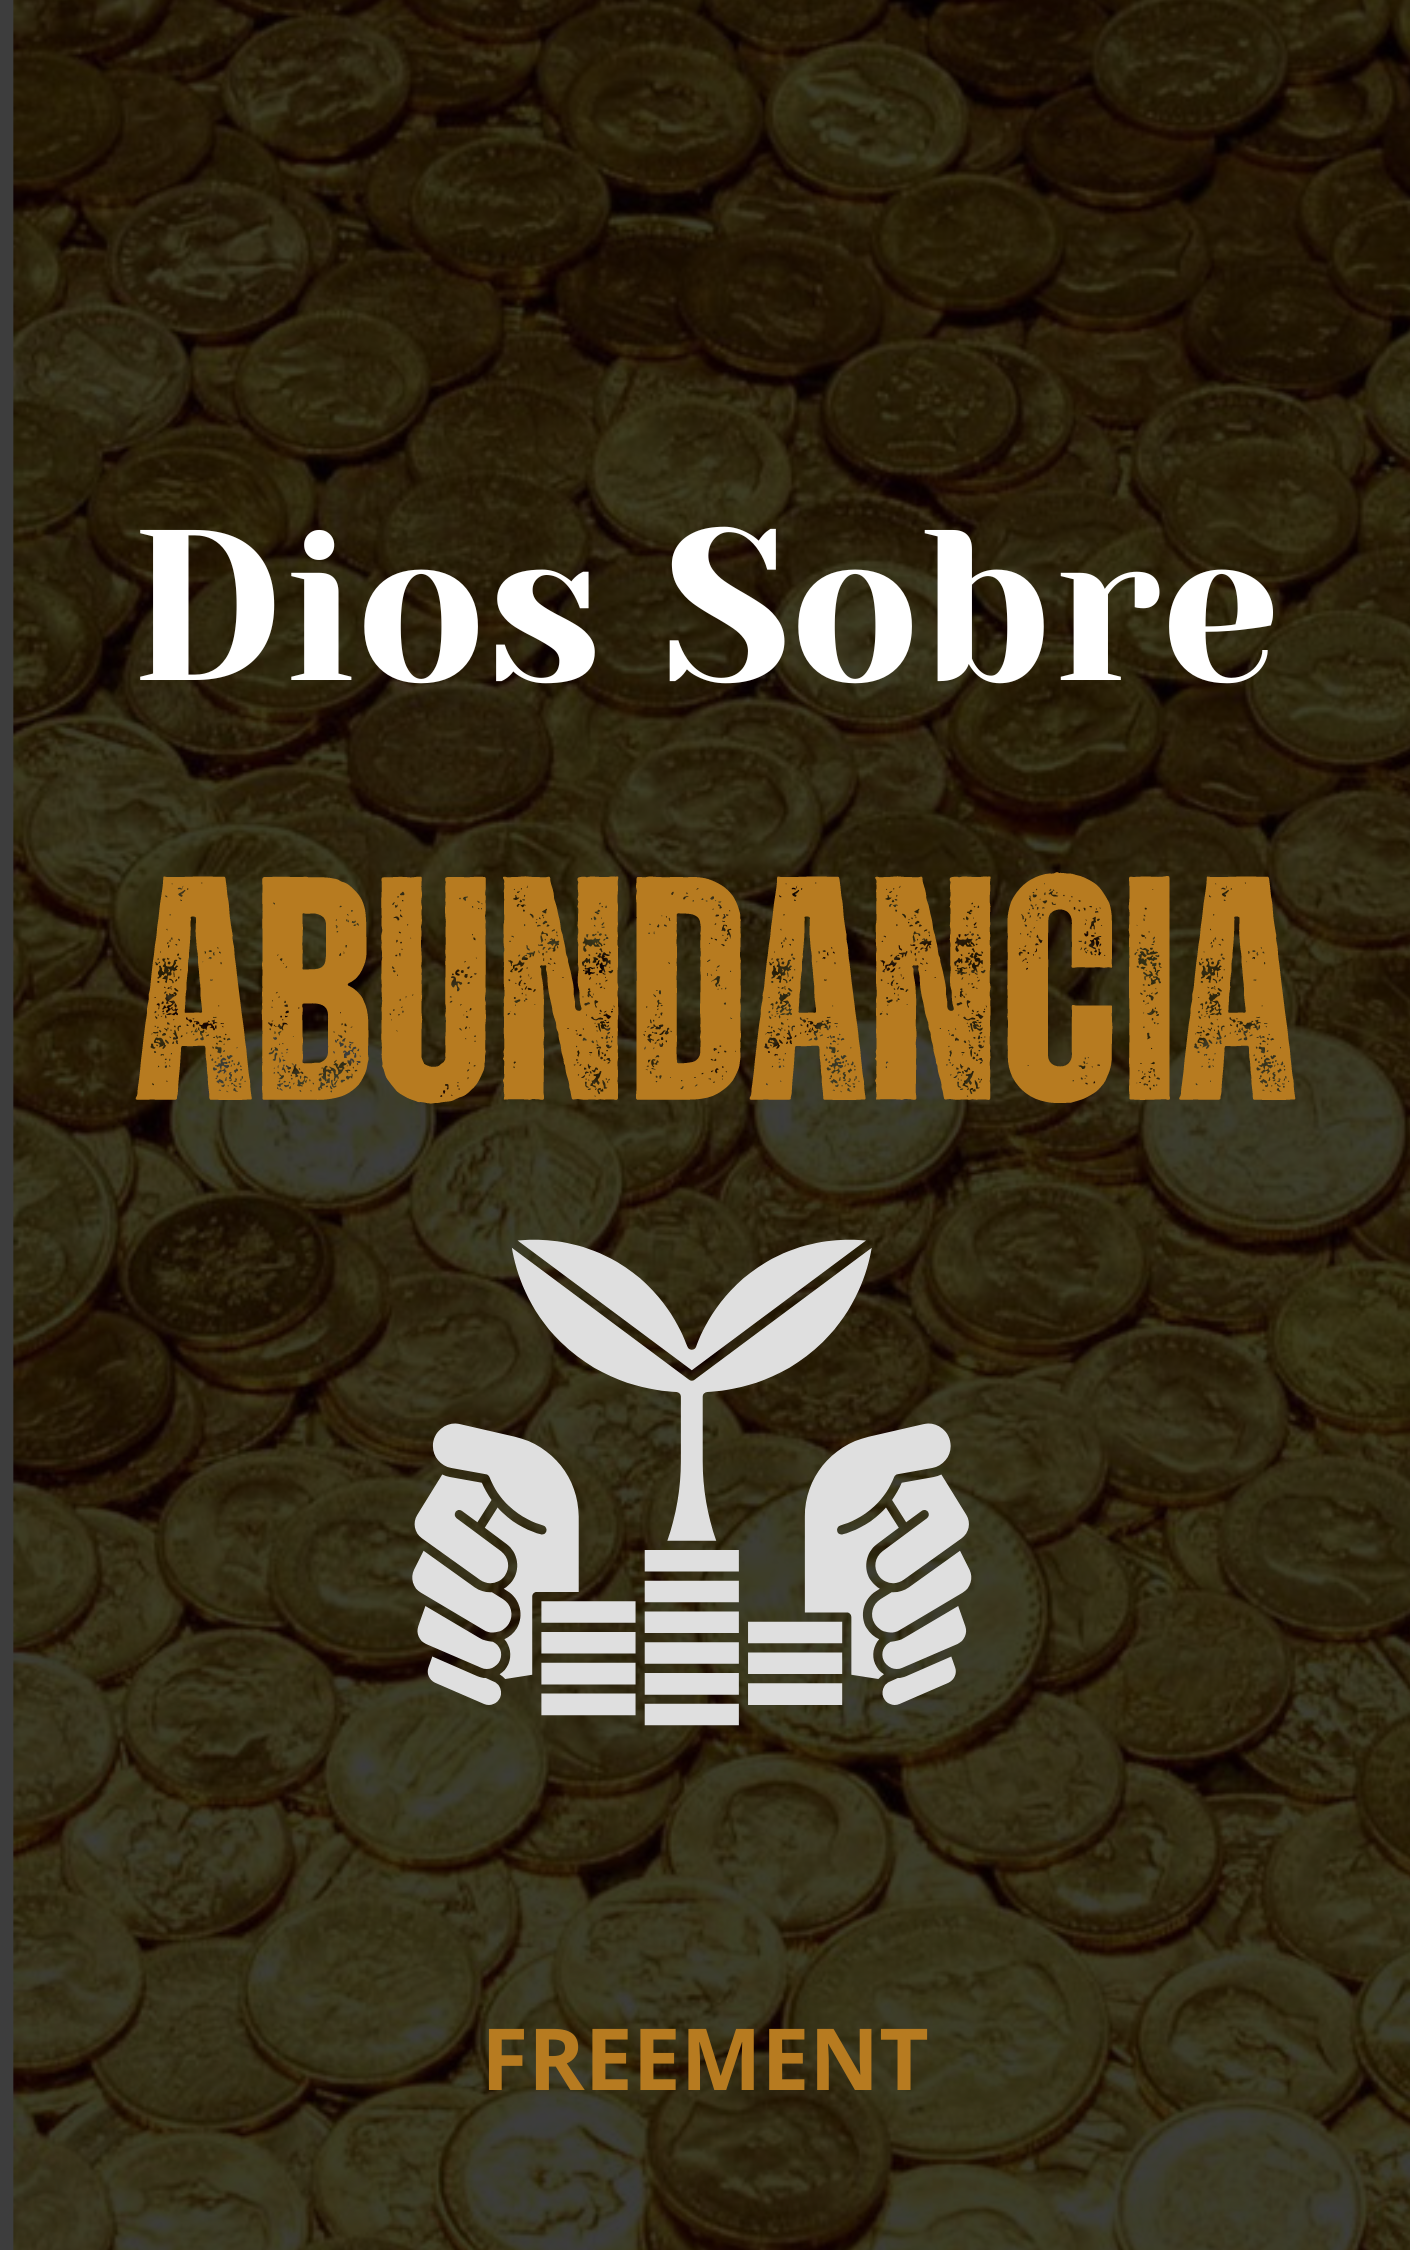 Prayer for abundance